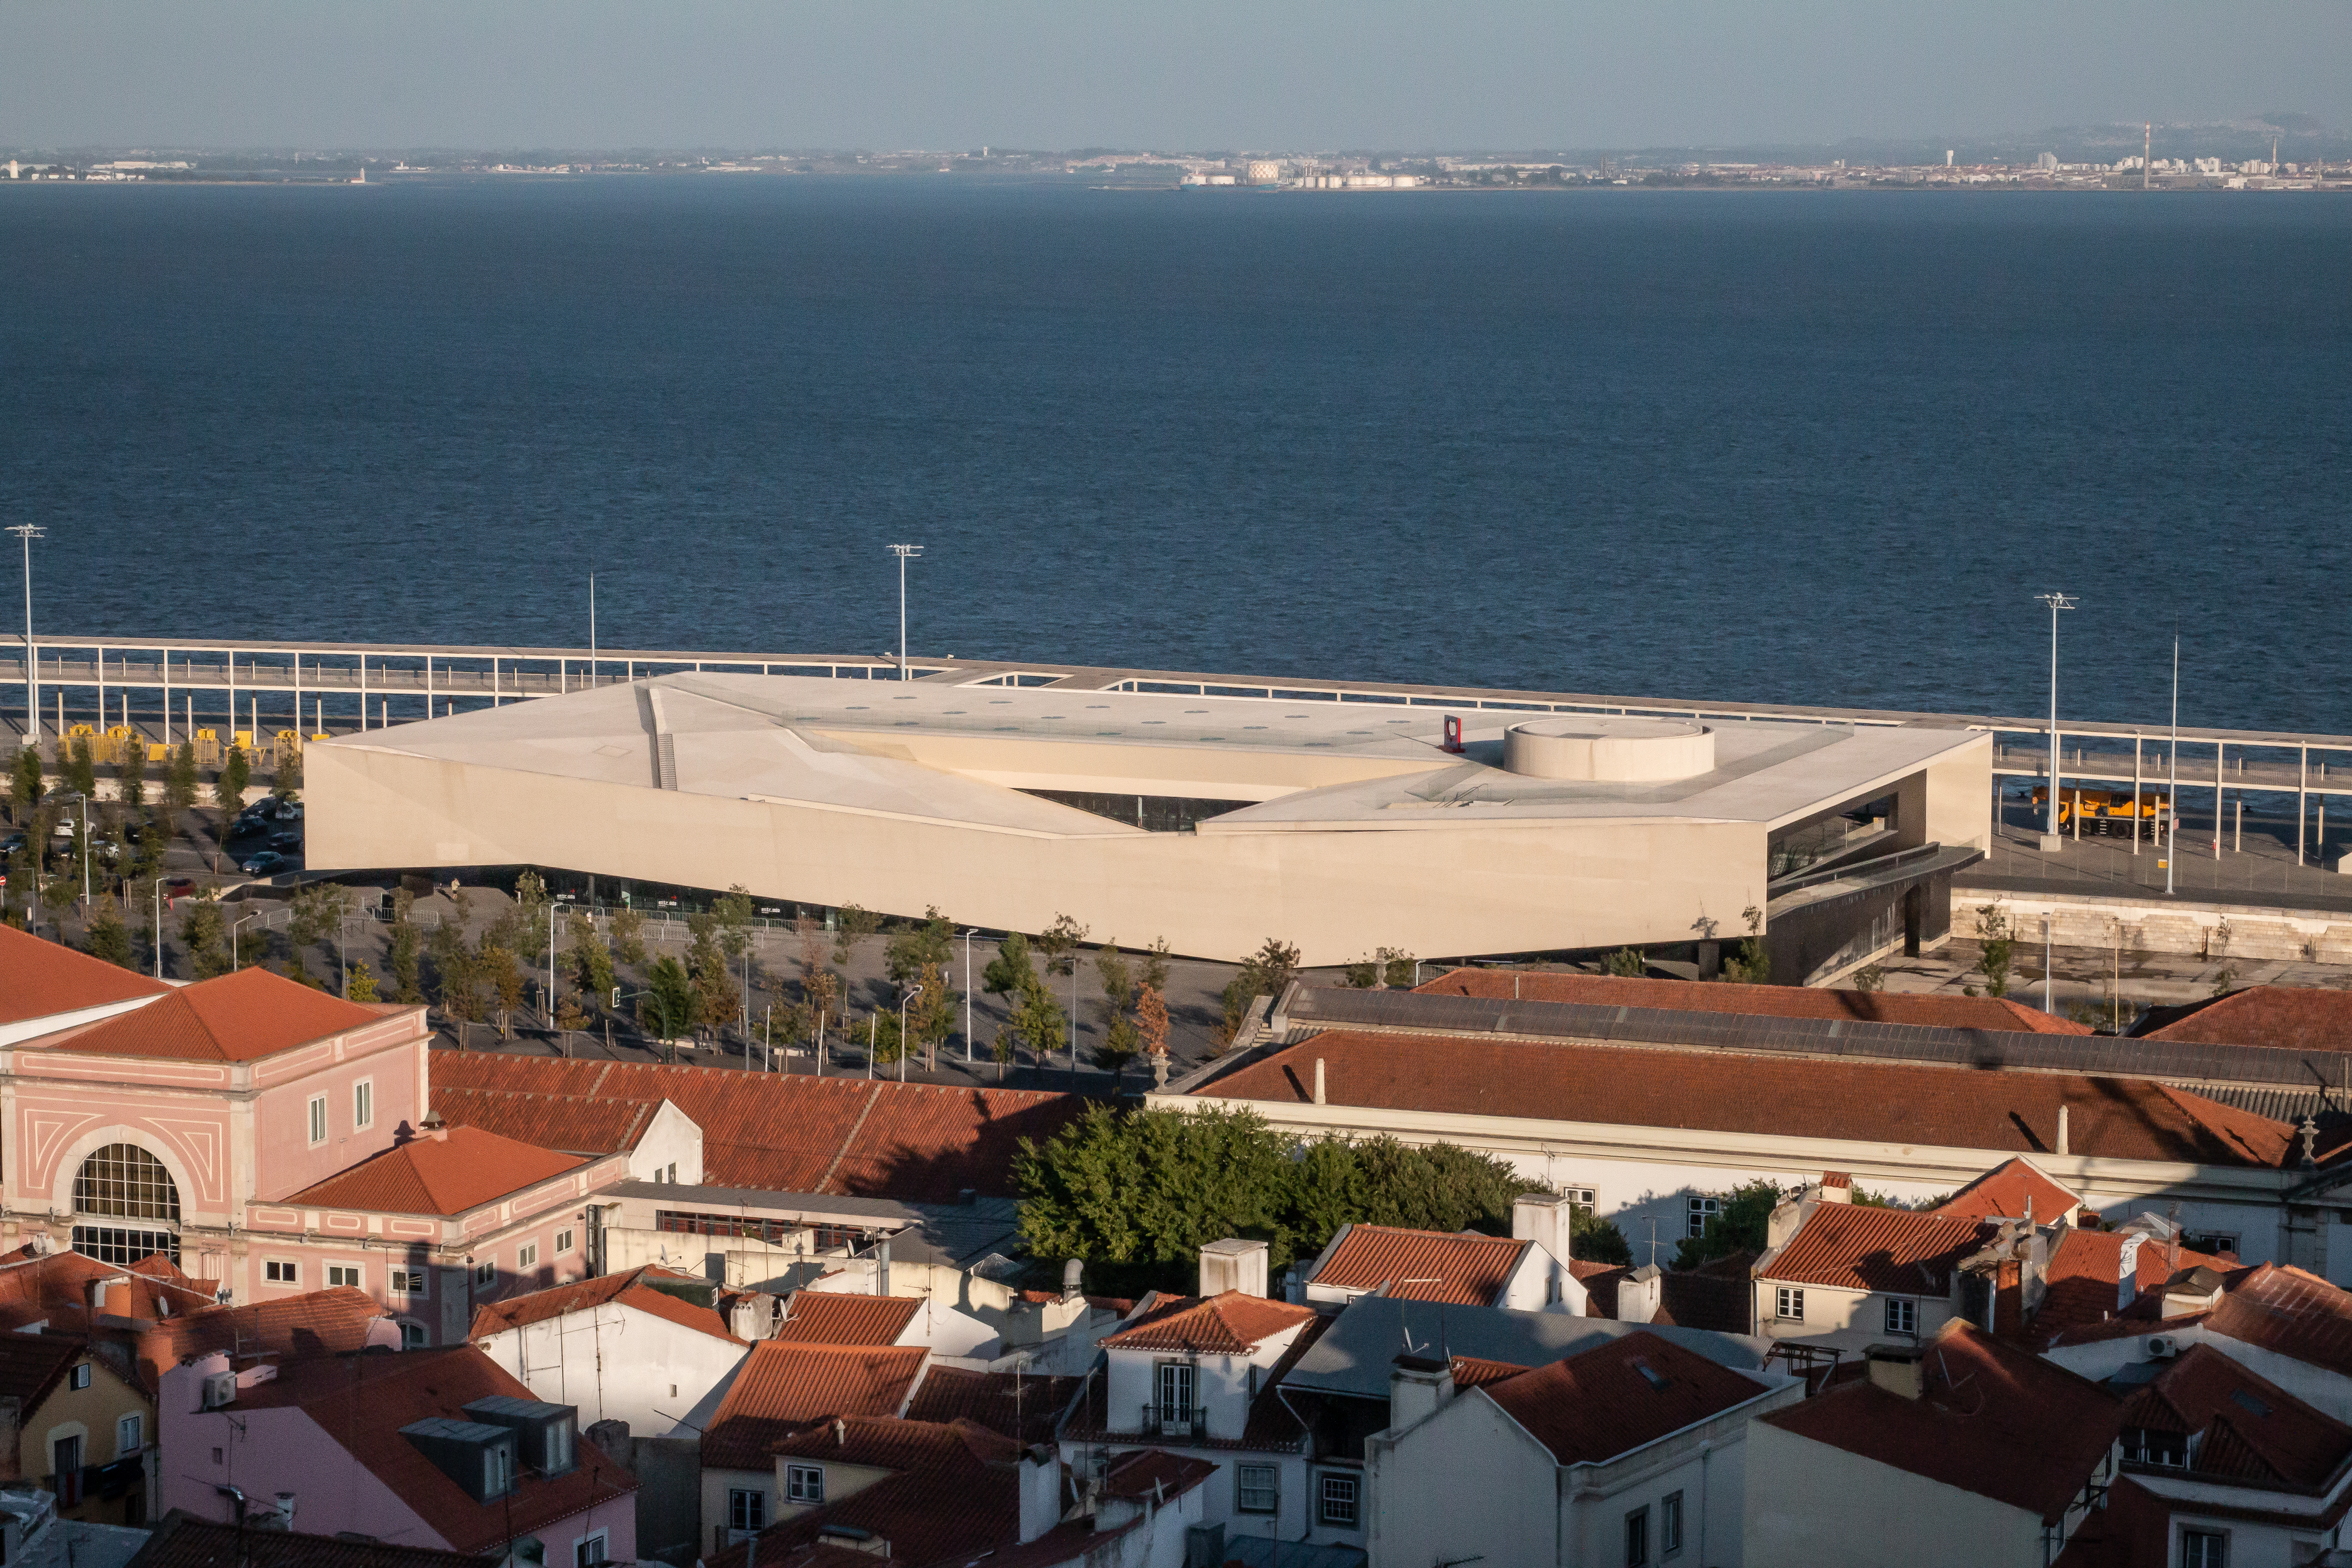 Lisbon Cruise Terminal - Terminal de Cruzeiros de Lisboa